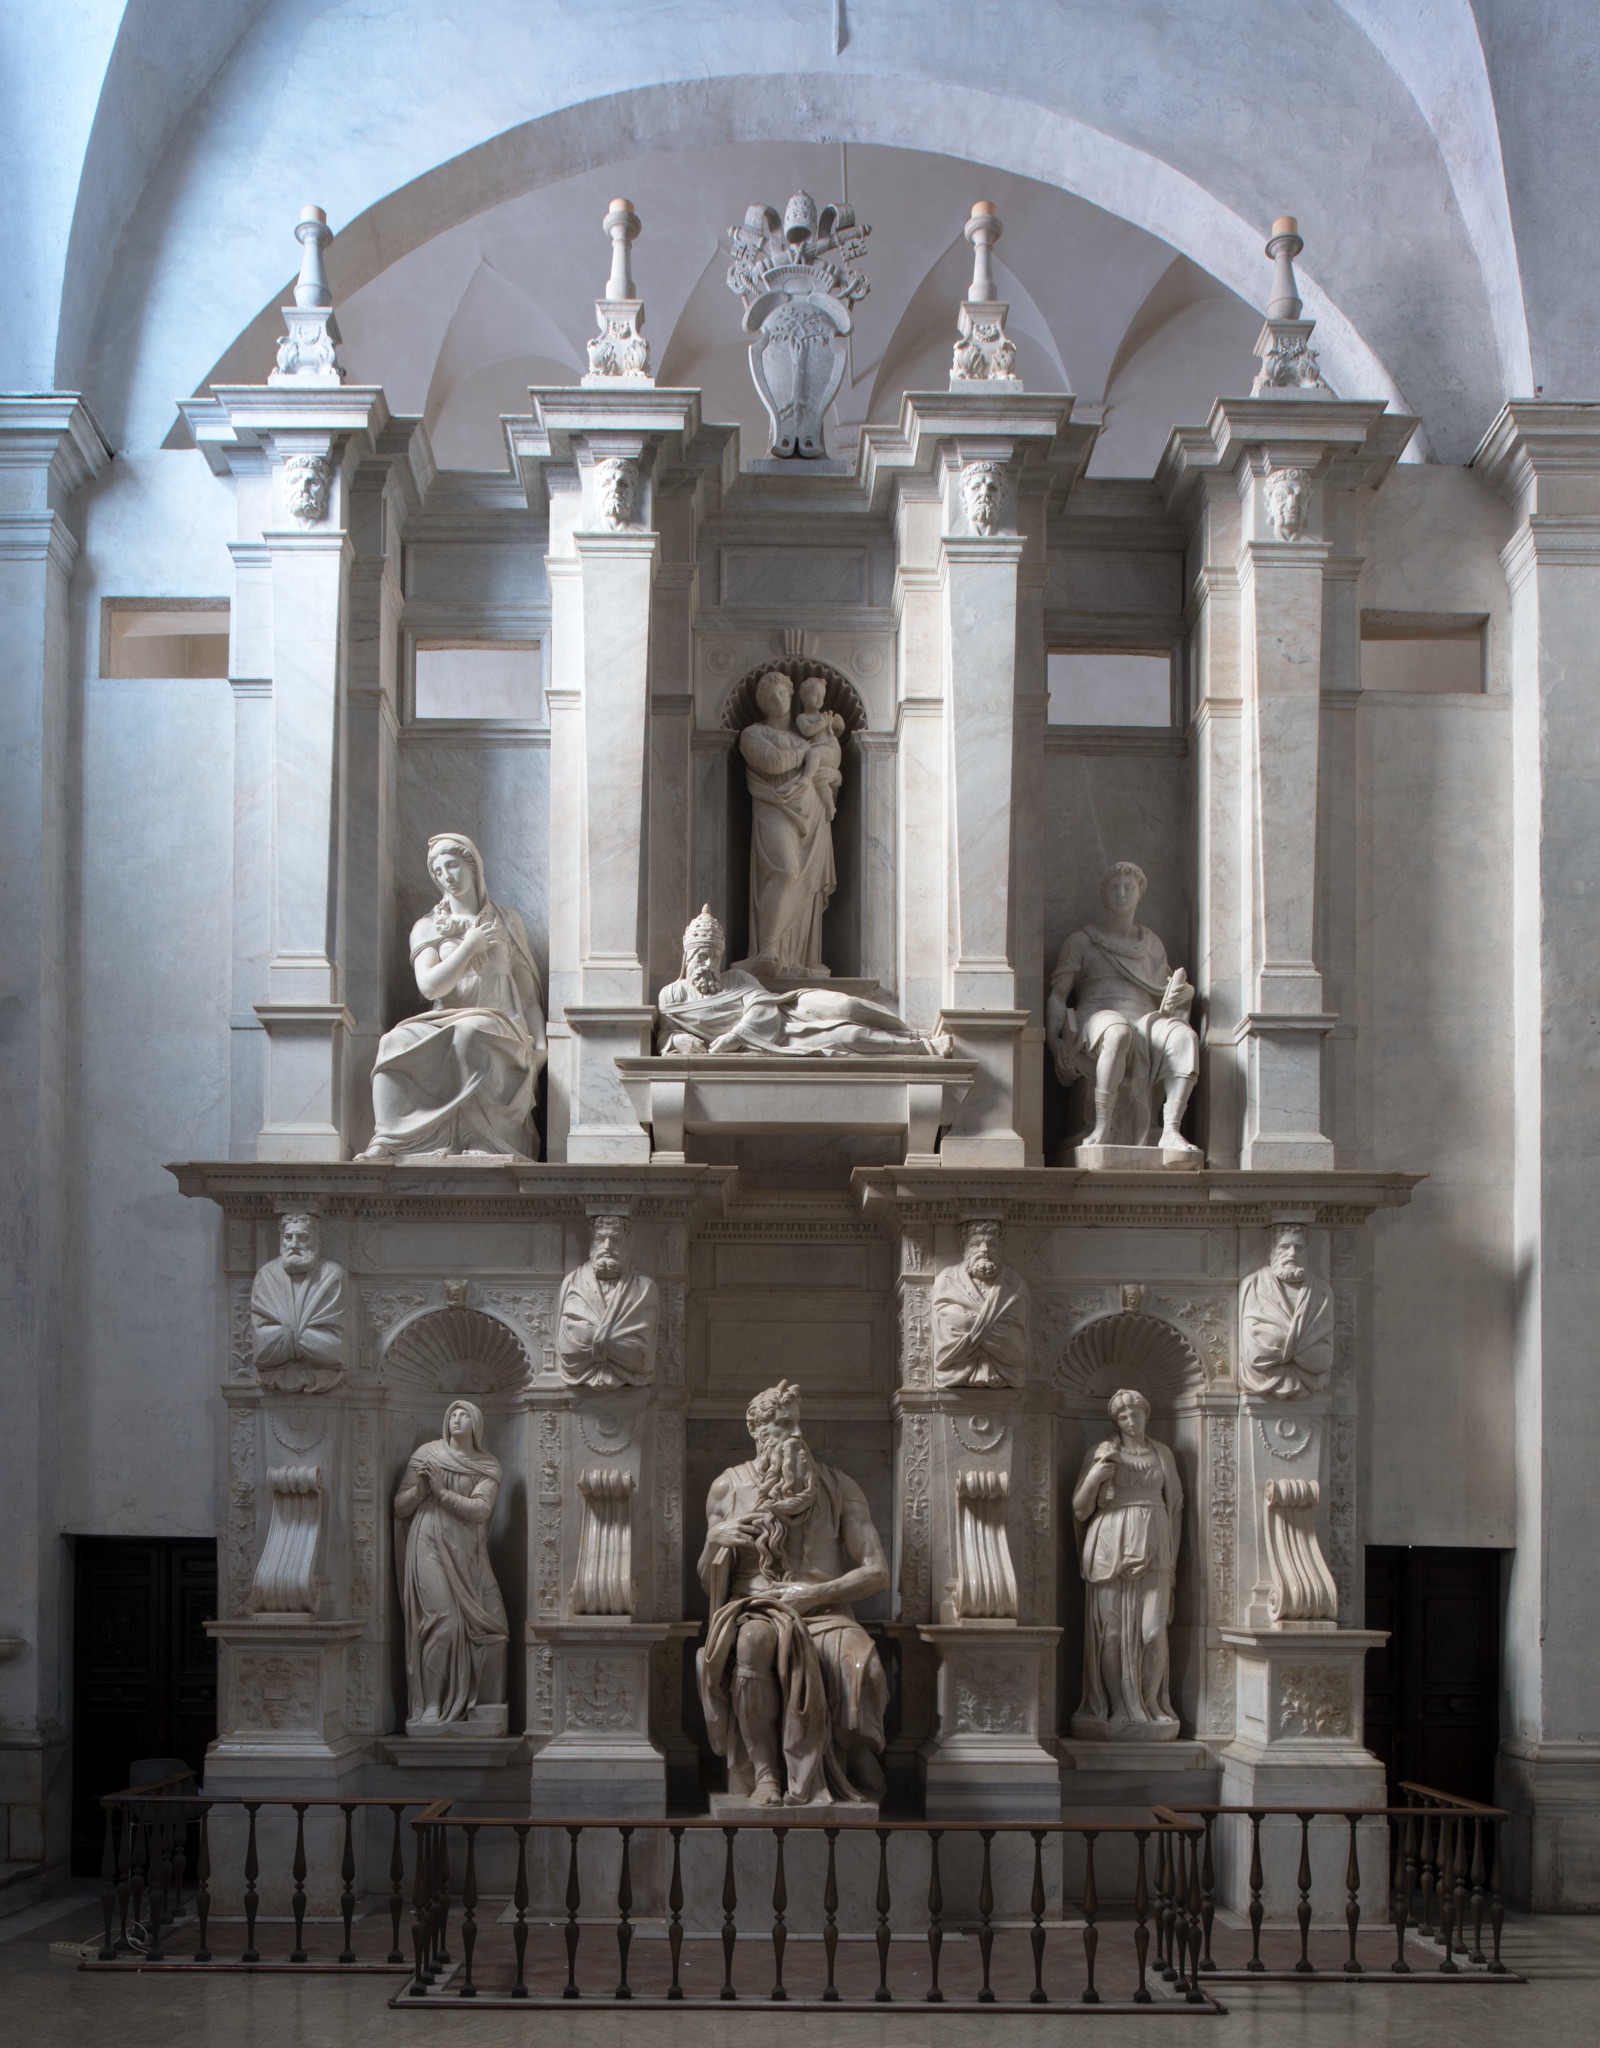 Michelangelo Buonarroti, Tomba di Giulio II, Mosè, 1513 c.a, marmo, basilica di San Pietro in Vincoli, Roma. Credits Andrea Jemolo 2016